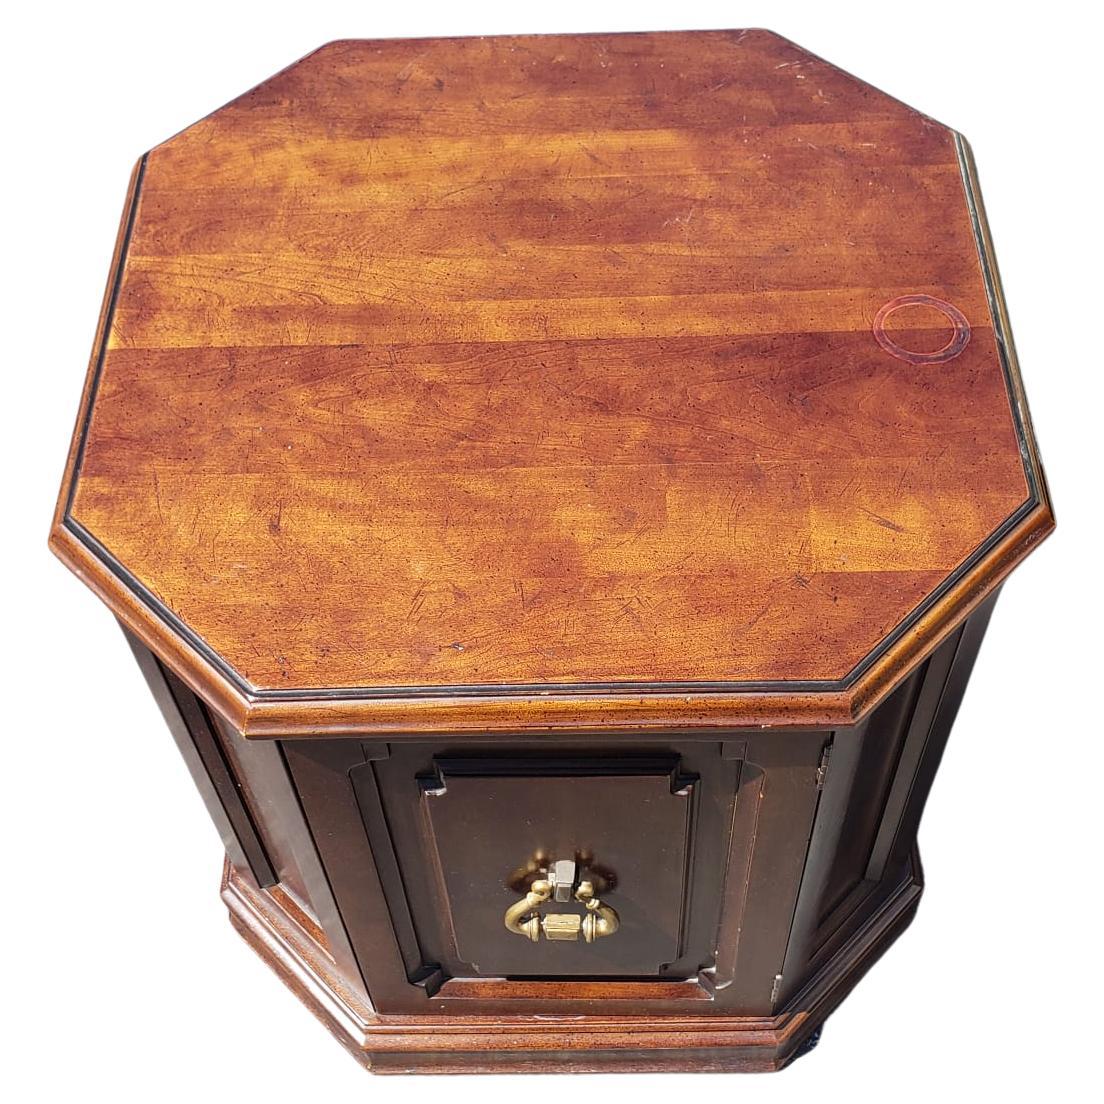 Paire de meubles Davis Cabinet Co. Commode octogonale en cerisier Tables d'appoint Armoires. Livré avec des étagères perdues et solide comme un roc.
Mesure 24